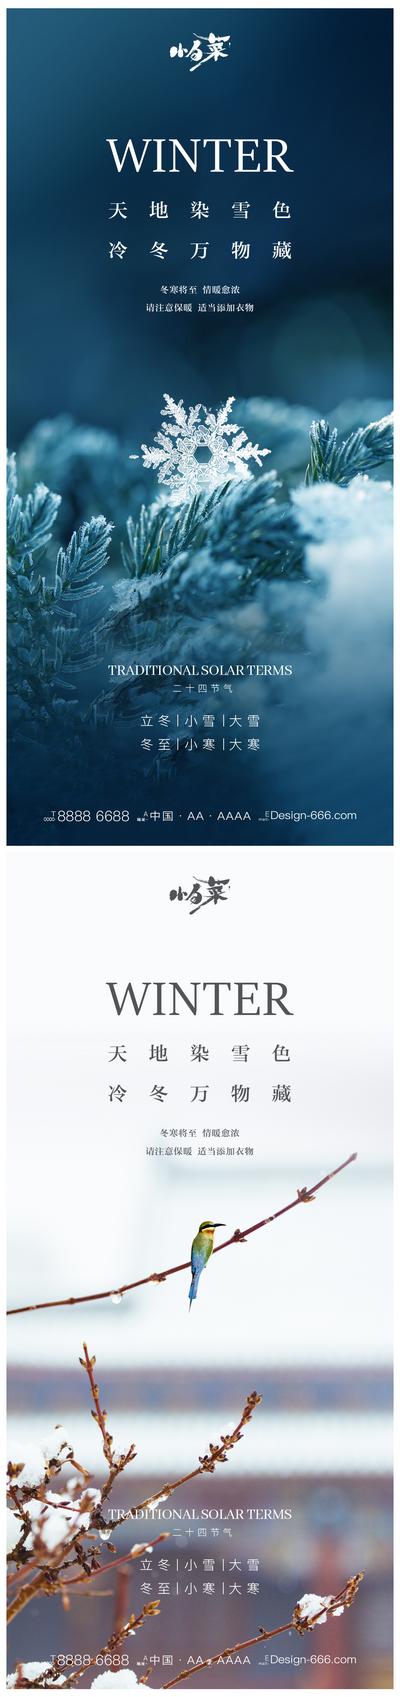 南门网 海报 二十四节气 立冬 小雪 大雪 冬至 小寒 大寒 雪花 雪景